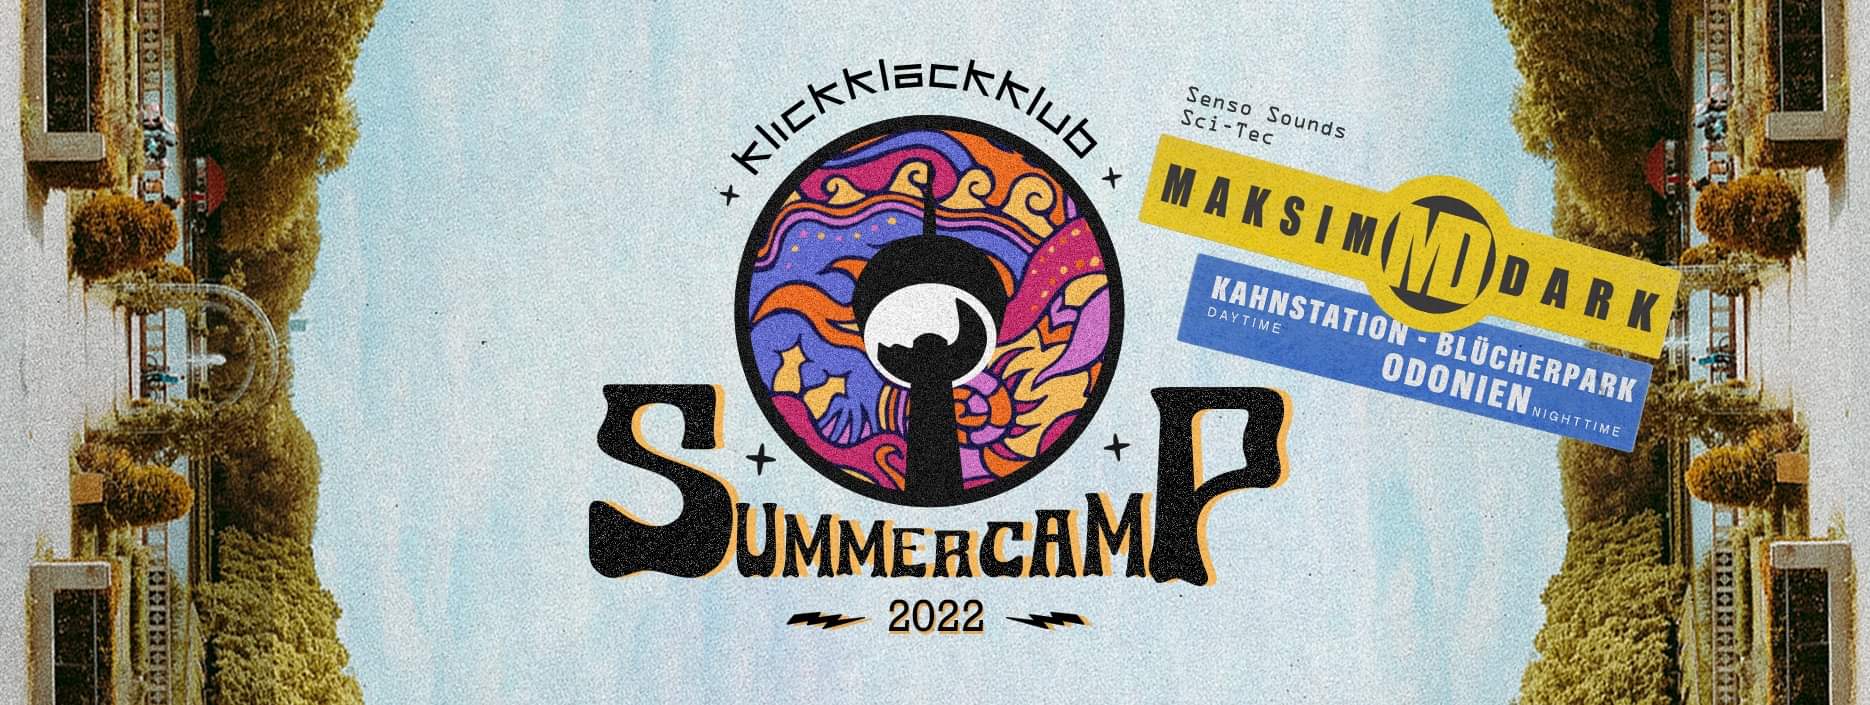 Flyer fÃ¼r: Kahnstation Blücherpark - klickklackklub Summercamp 2022